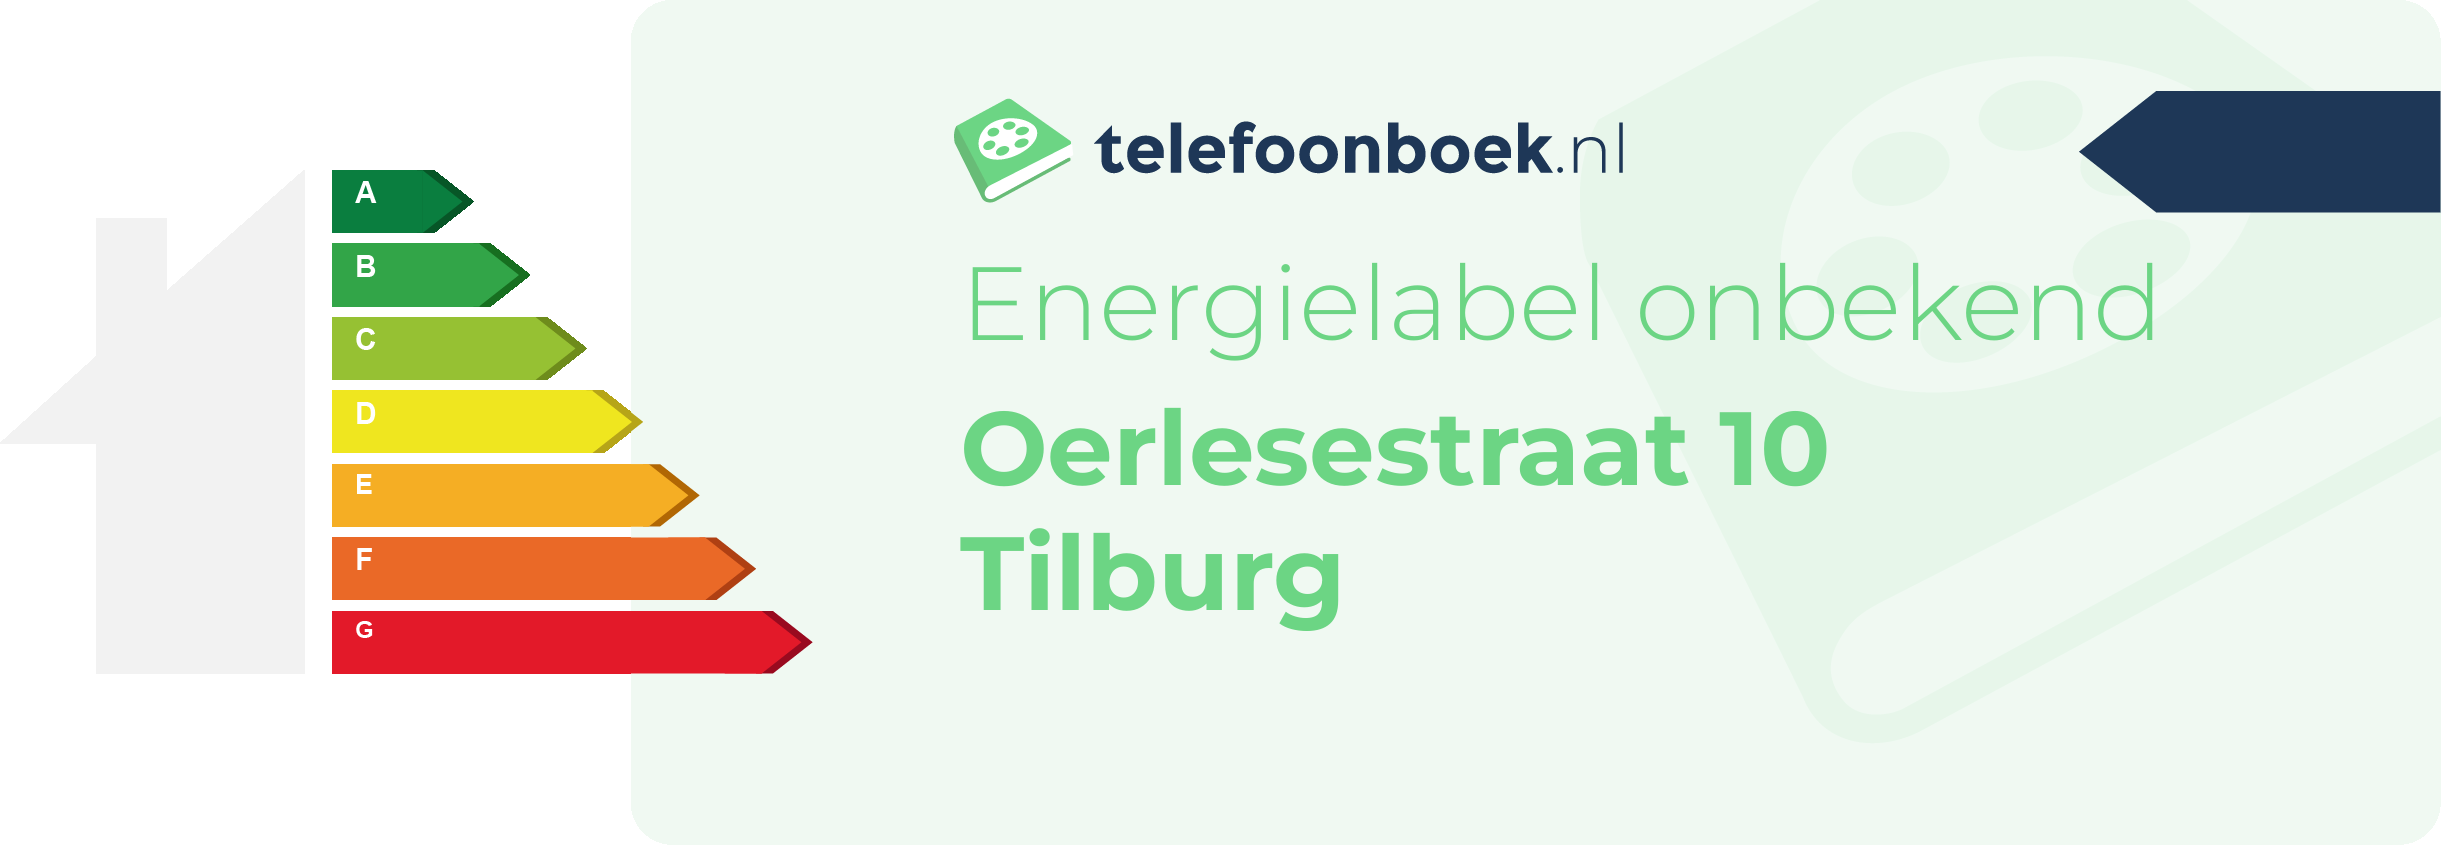 Energielabel Oerlesestraat 10 Tilburg